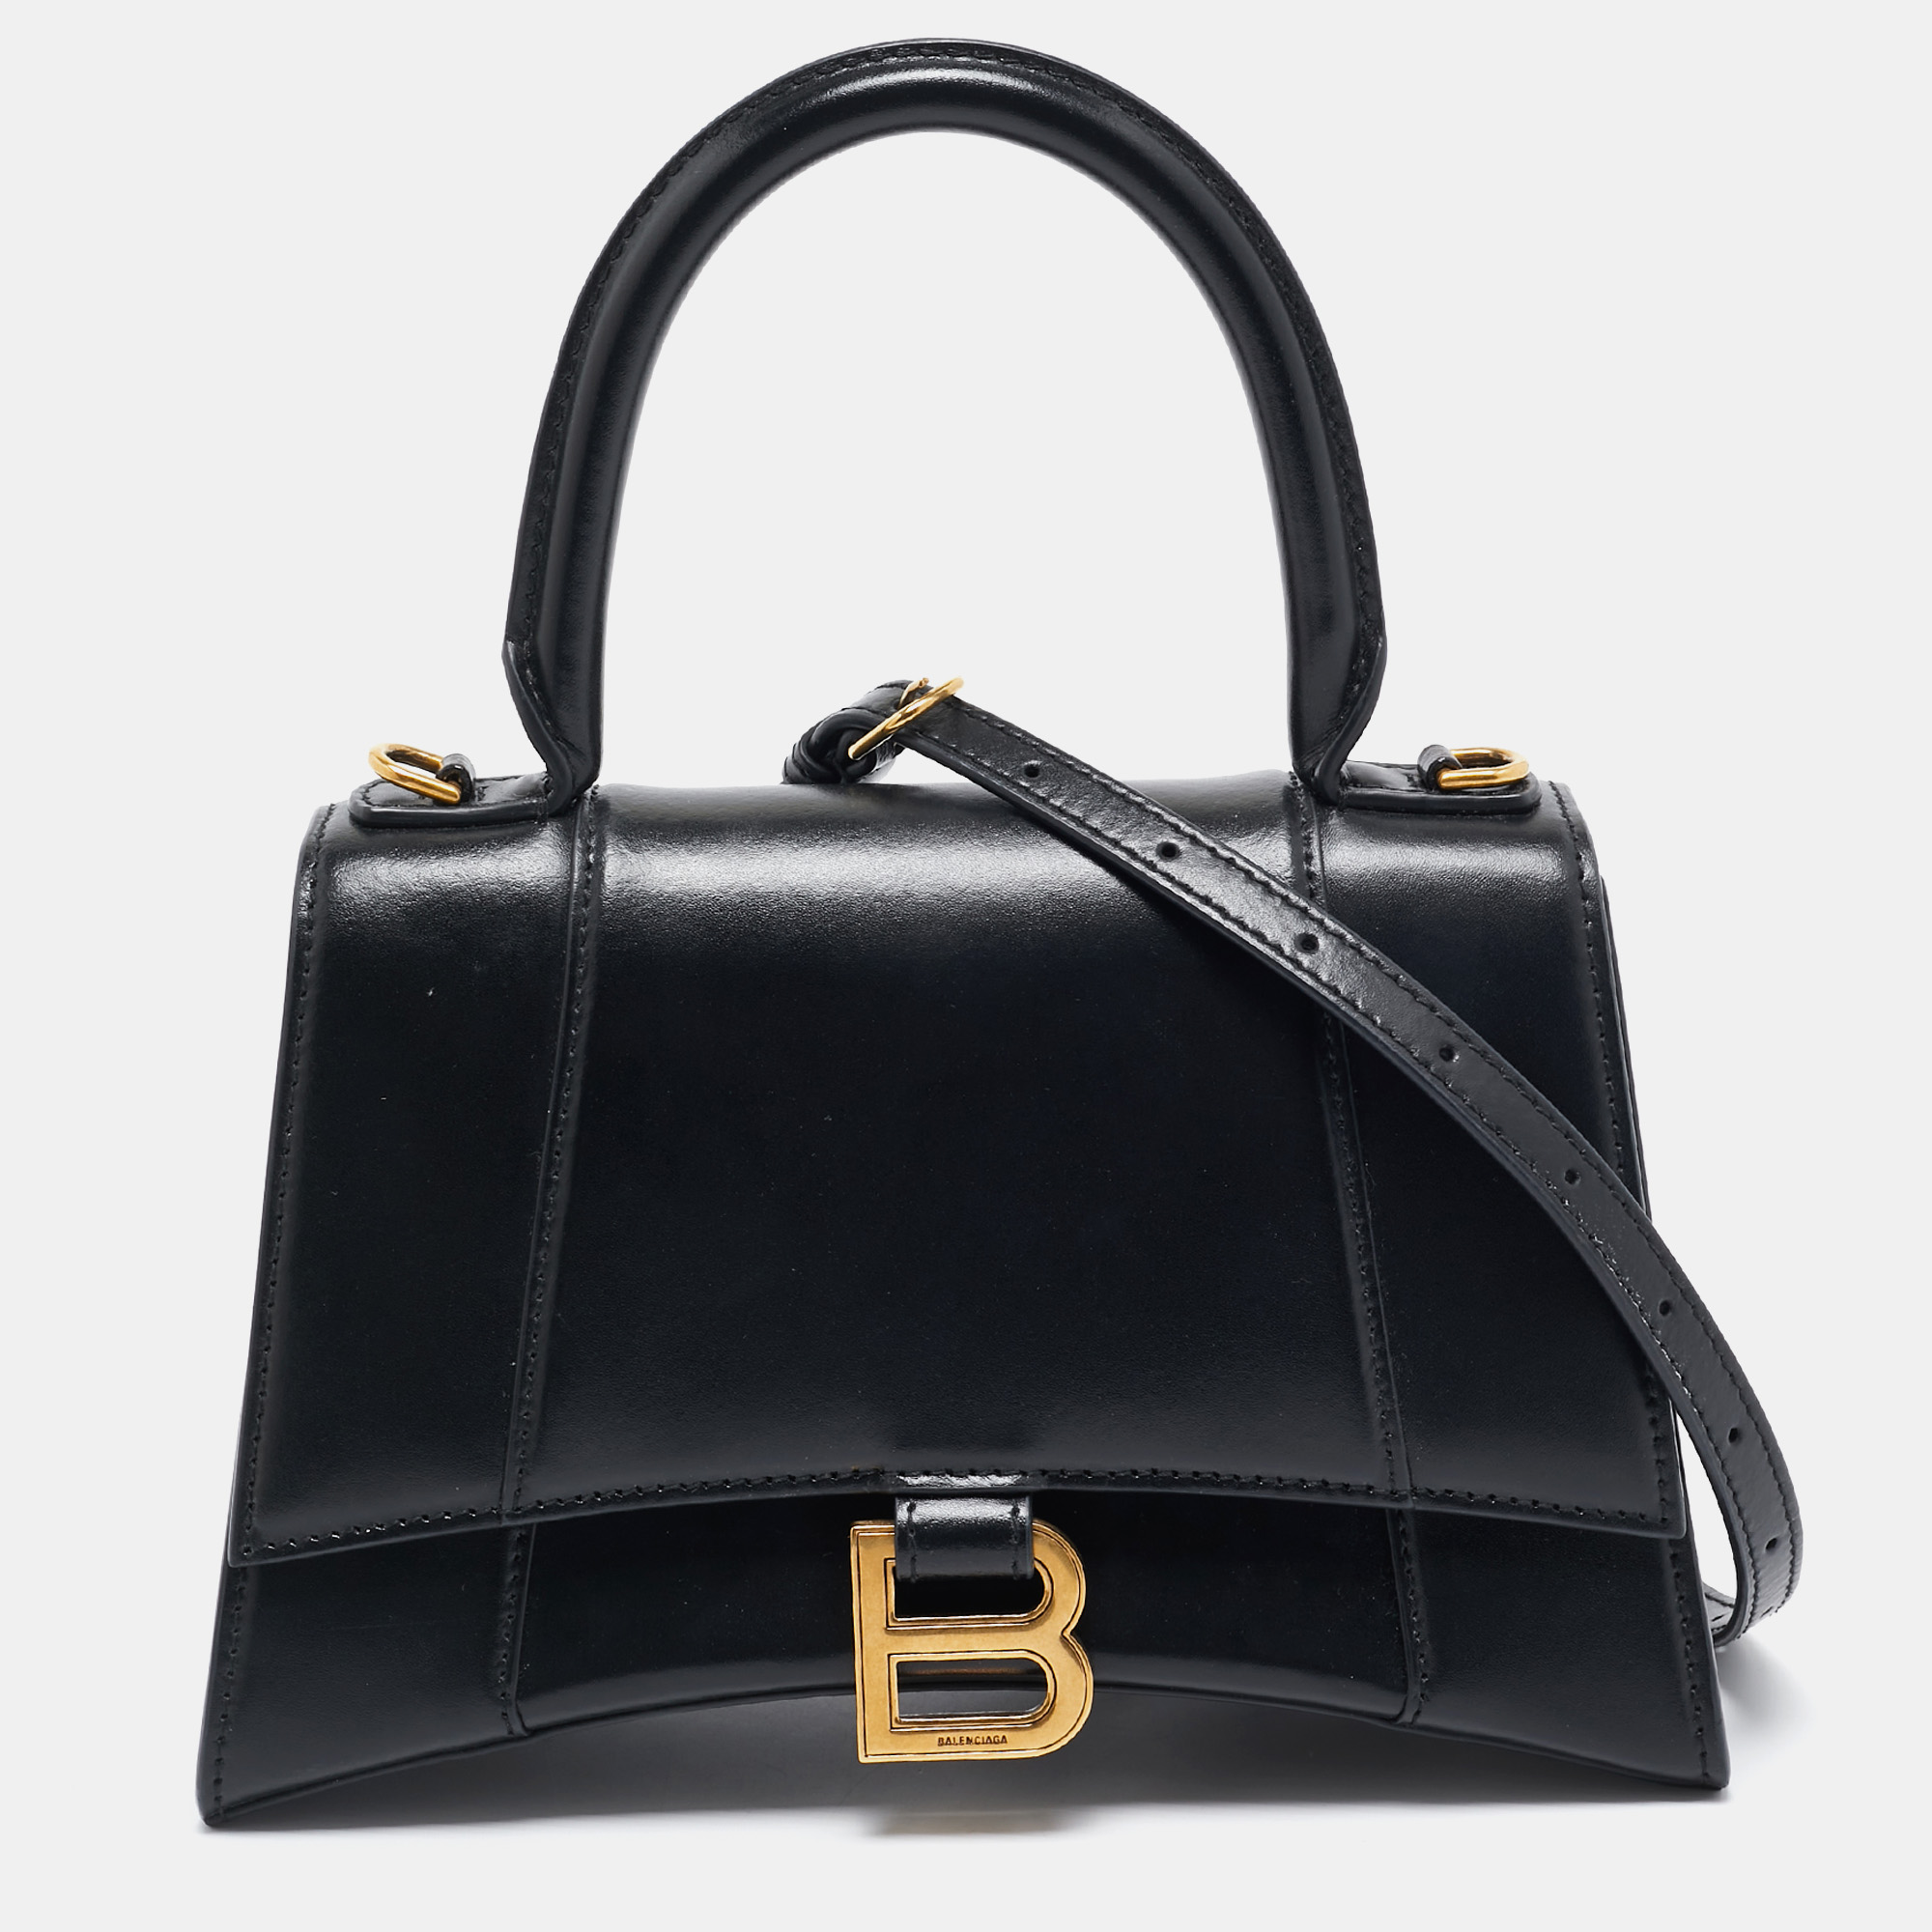 

Balenciaga Black Leather Small Hourglass Top Handle Bag